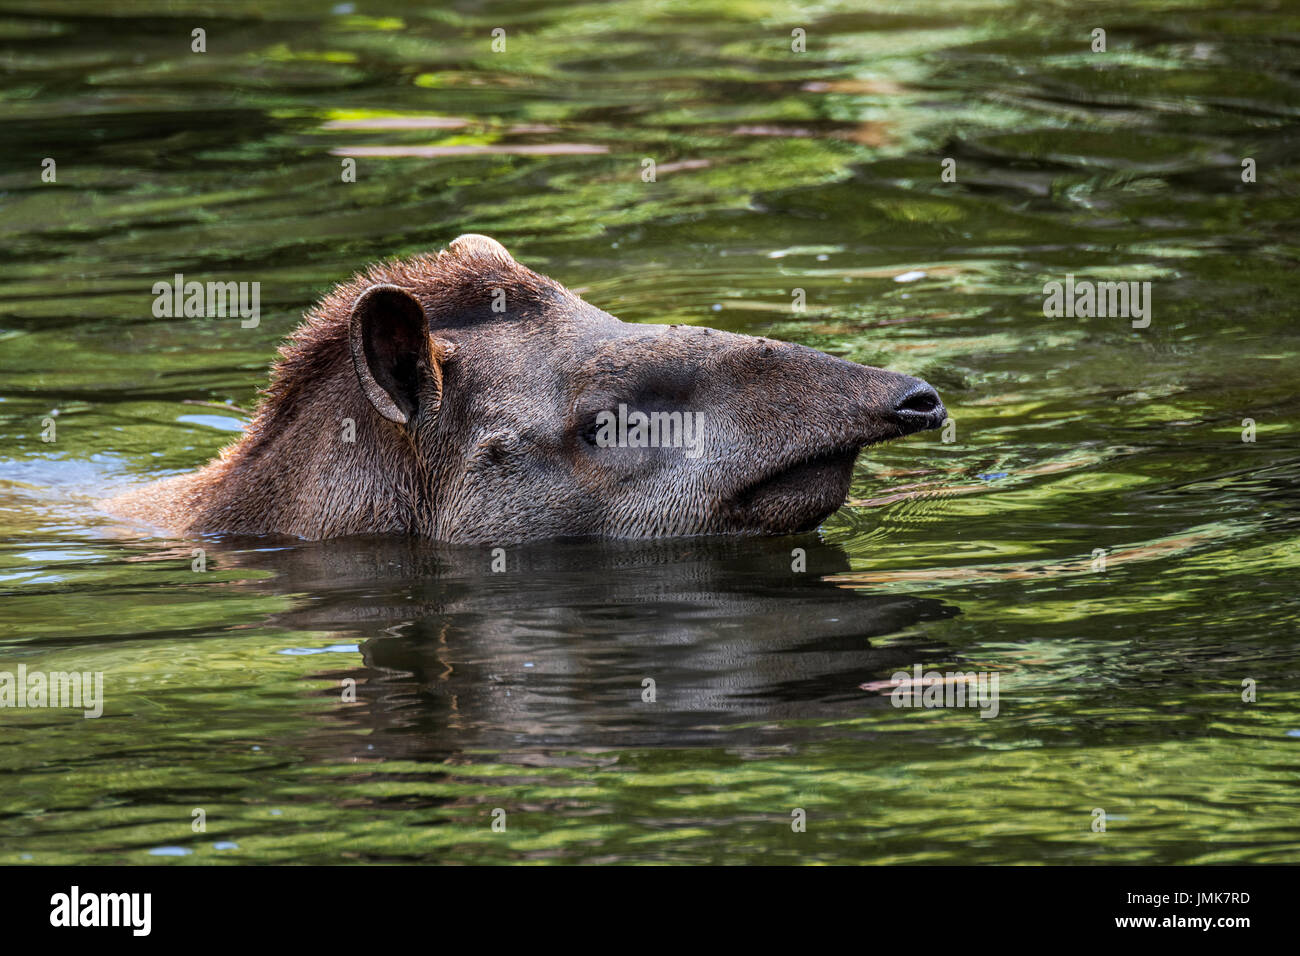 South American tapir / Brazilian tapir / lowland tapir (Tapirus terrestris), native to the Amazon, swimming in river and showing prehensile nose trunk Stock Photo